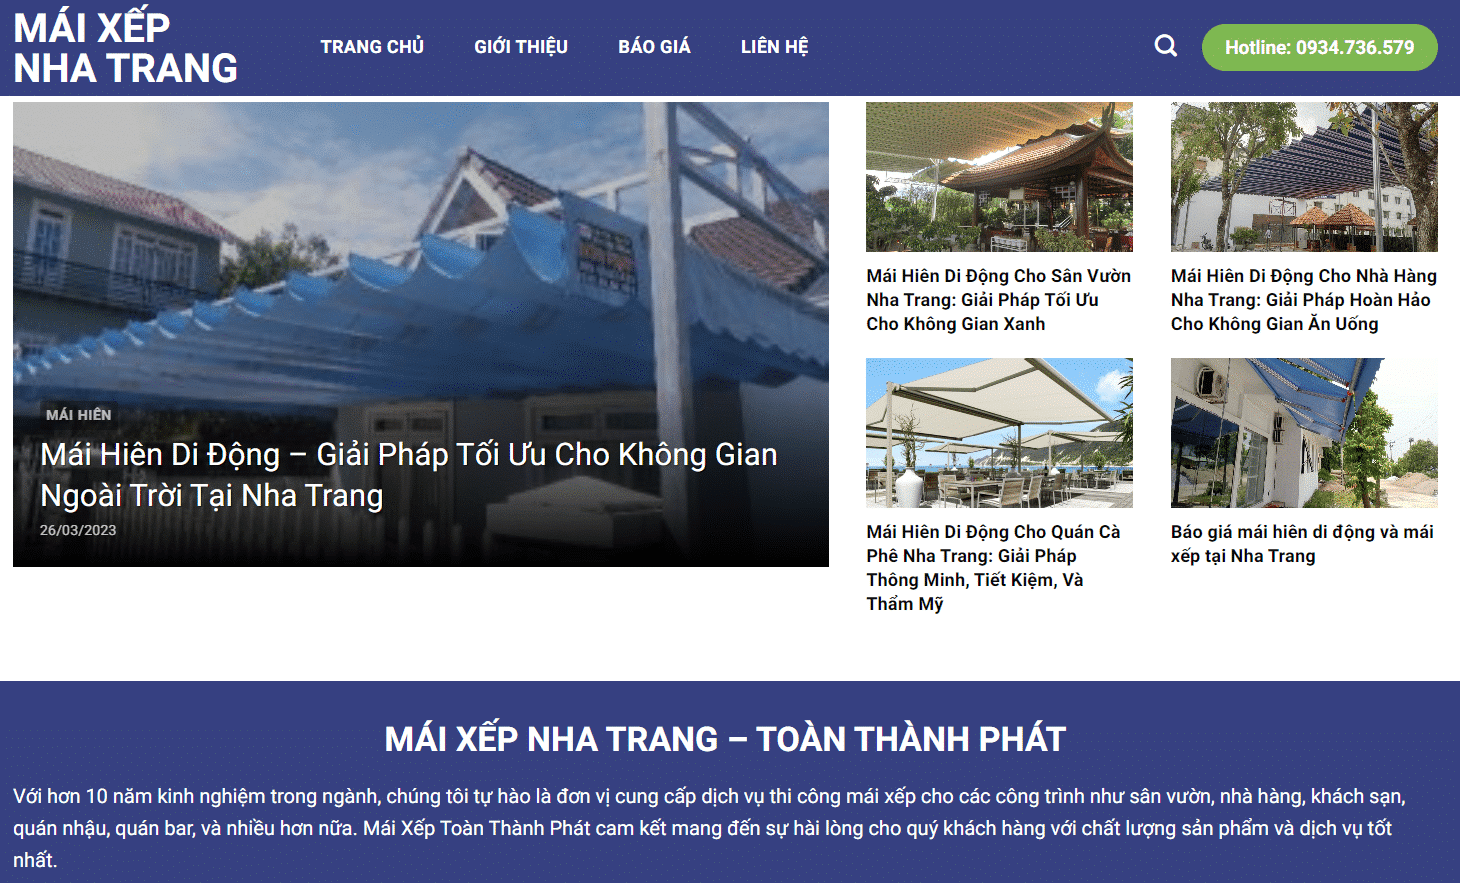 Dự án thiết kế website Mái Xếp Nha Trang của Công ty Toàn Thành Phát